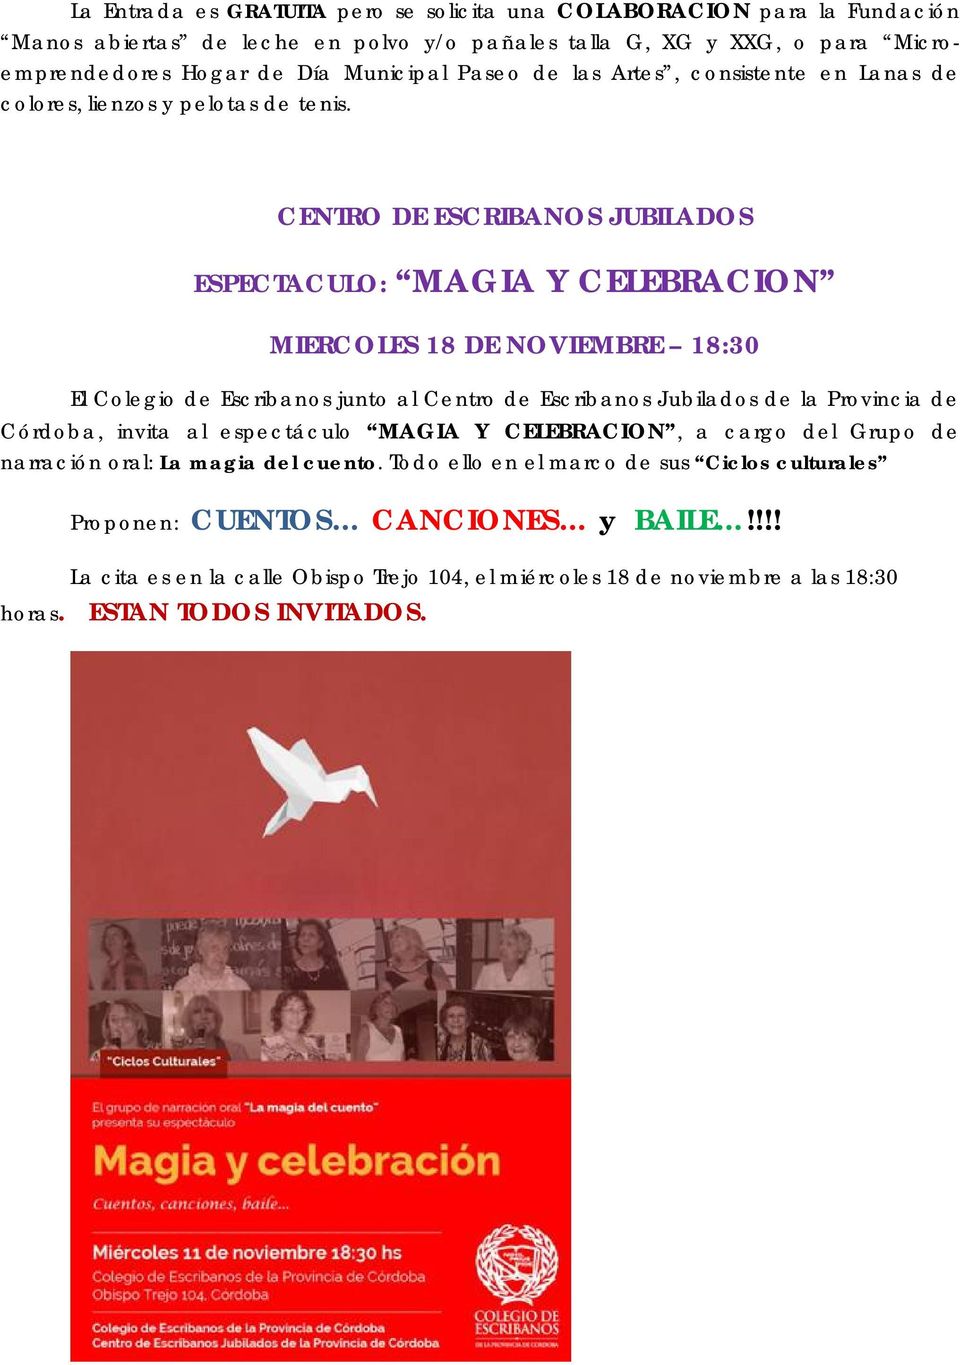 CENTRO DE ESCRIBANOS JUBILADOS ESPECTACULO: MAGIA Y CELEBRACION MIERCOLES 18 DE NOVIEMBRE 18:30 El Colegio de Escribanos junto al Centro de Escribanos Jubilados de la Provincia de Córdoba,